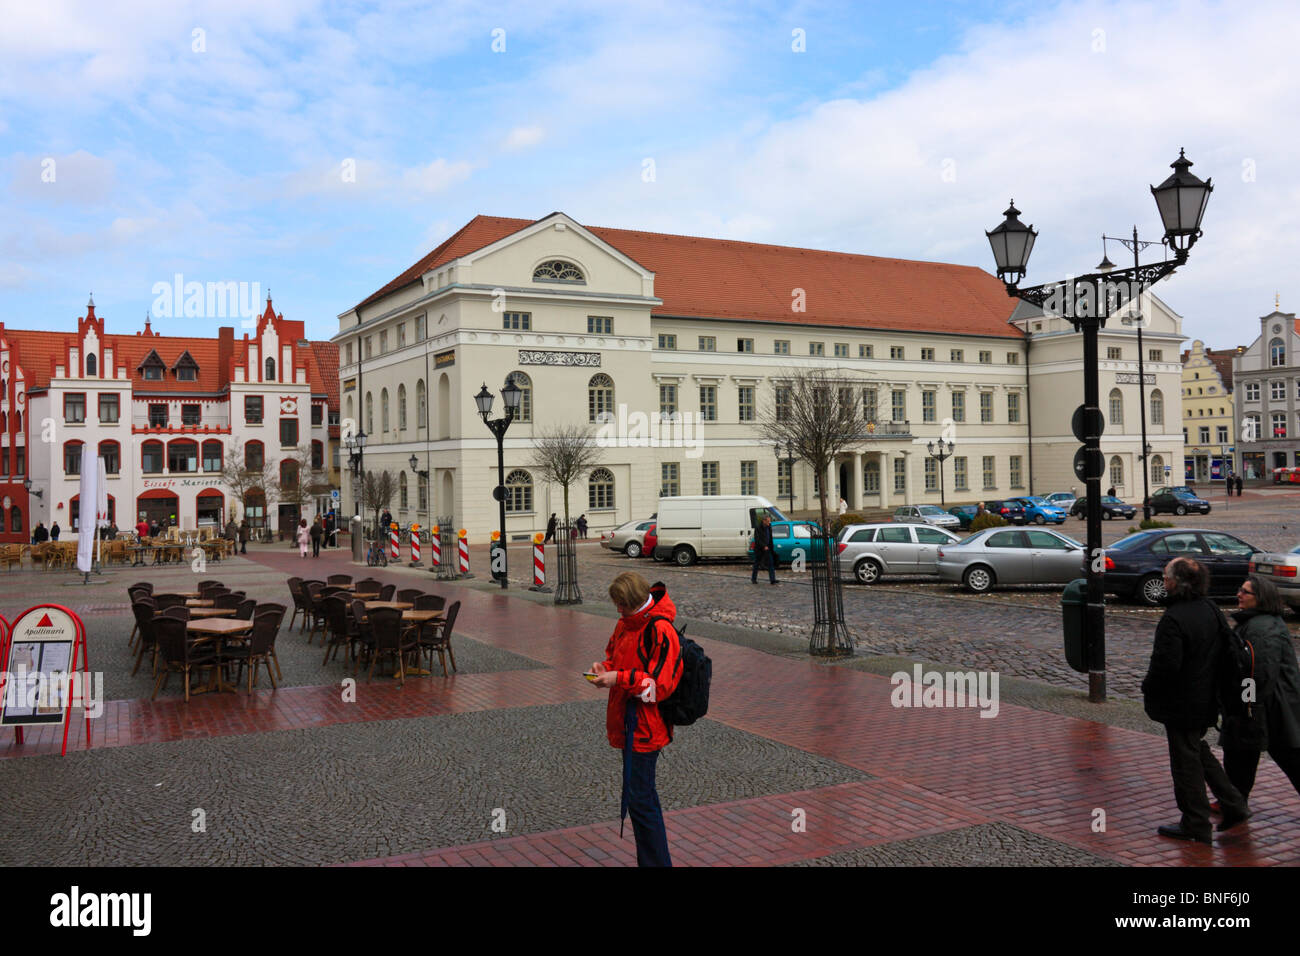 Stadtzentrum mit Marktplatz und Rathaus in Wismar, Deutschland Stockfoto